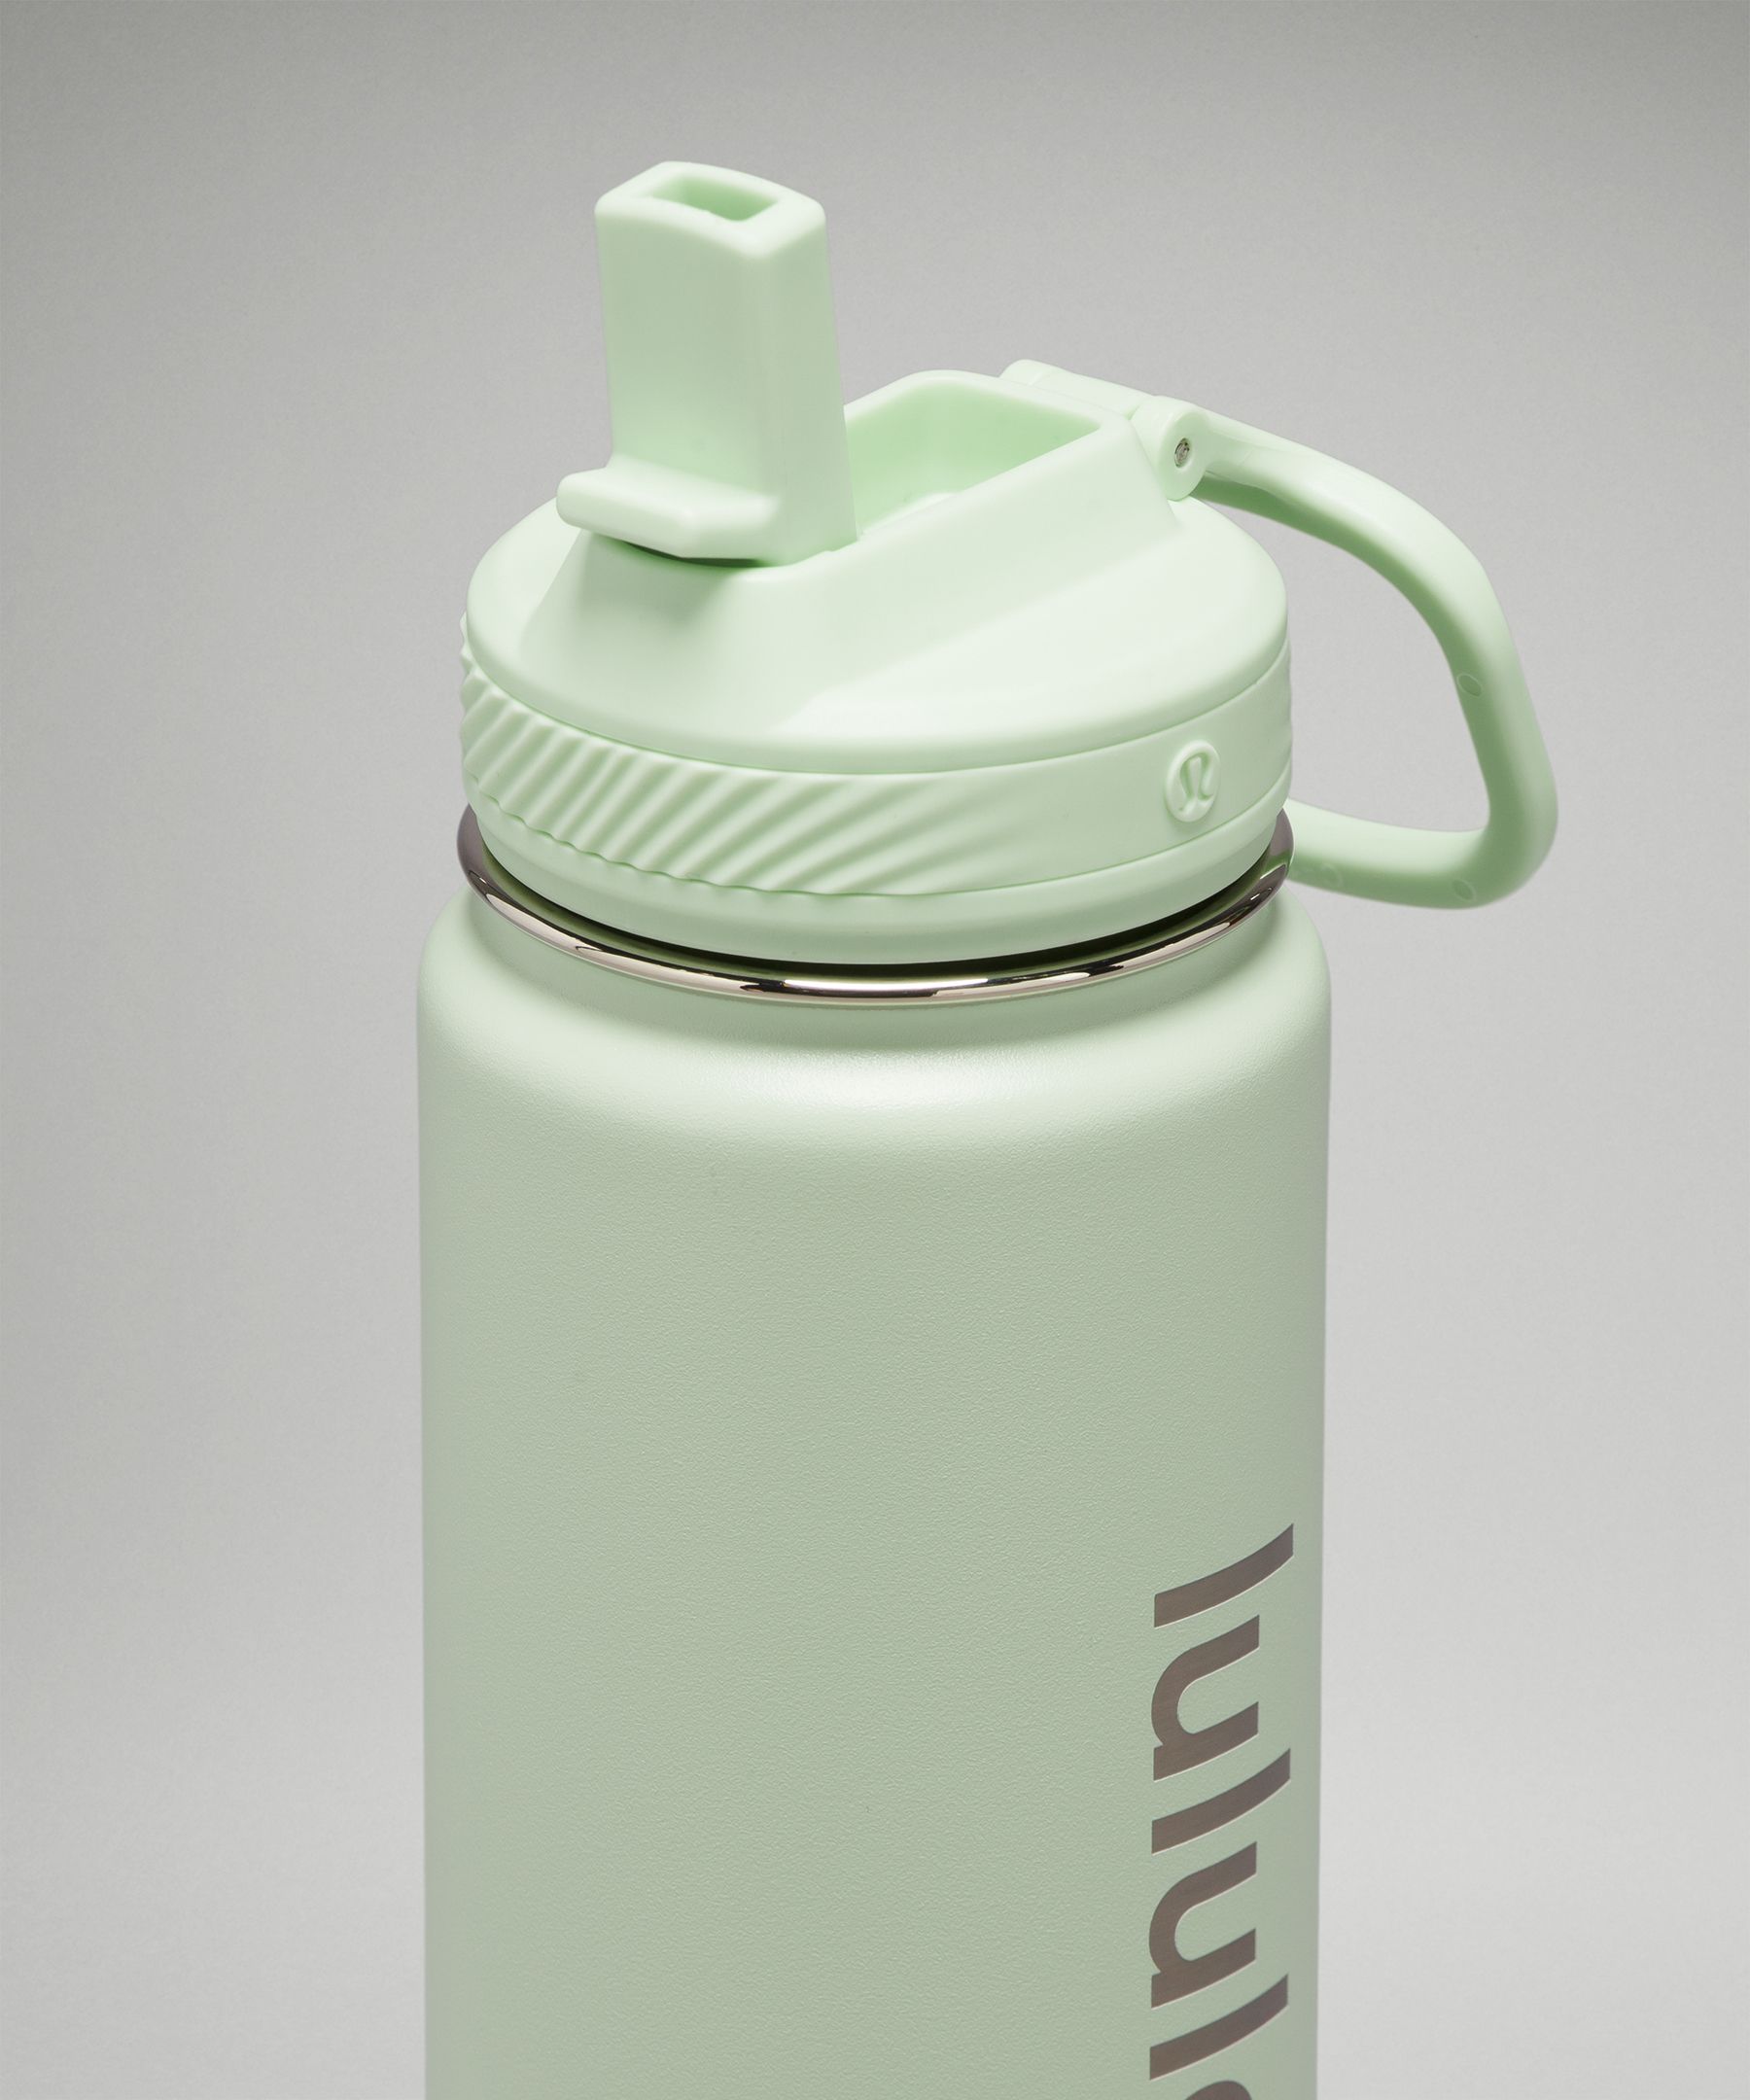 Lululemon water bottles